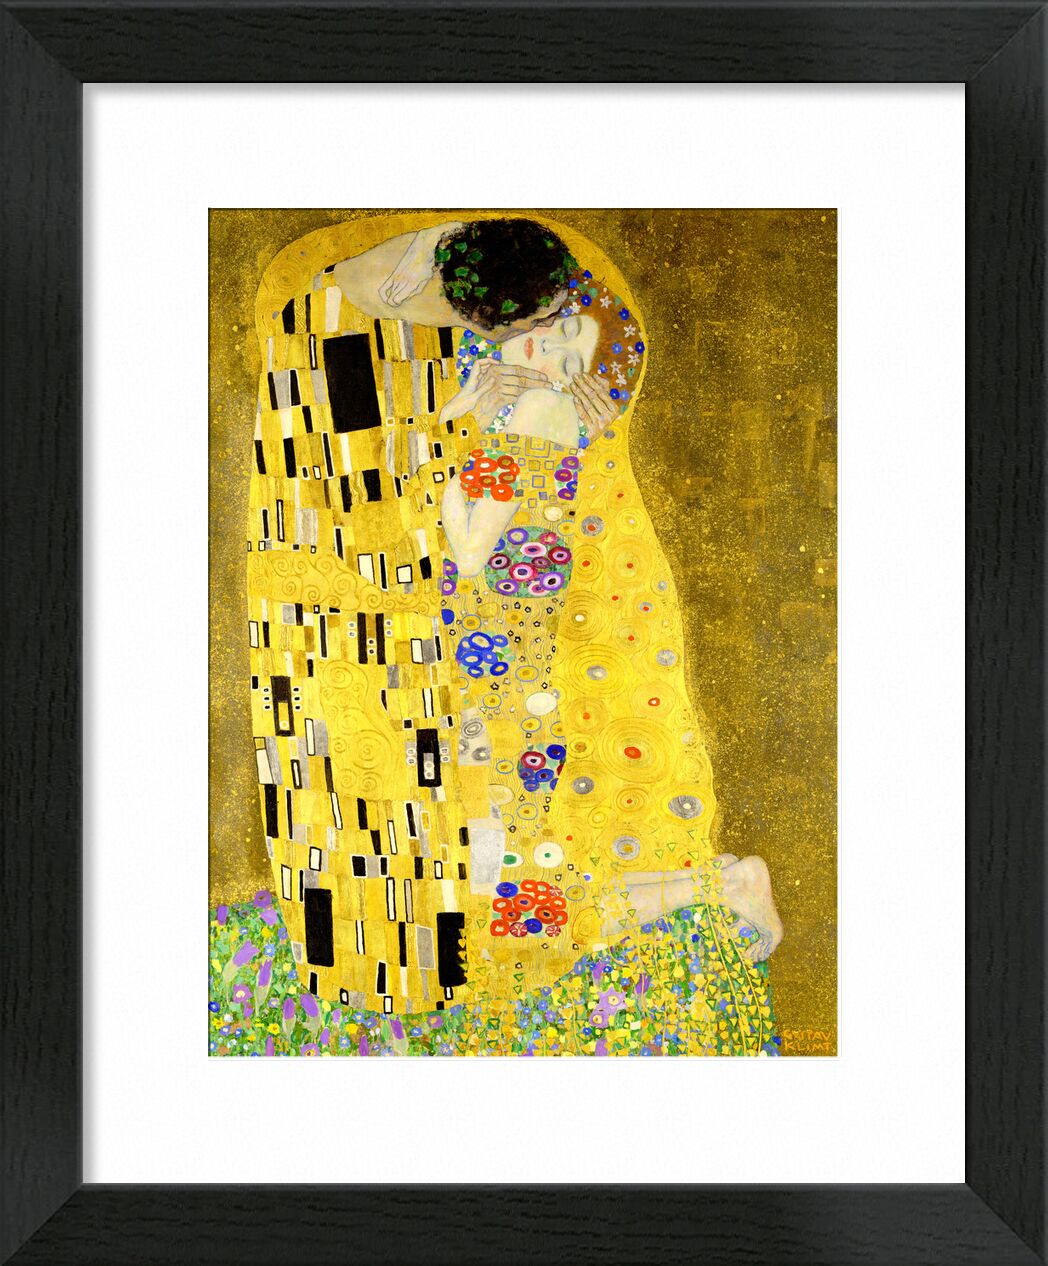 Details of the artwork The kiss - Gustav Klimt von Bildende Kunst, Prodi Art, KLIMT, Jugendstil, Kuss, Mann, Frau, Paar, Liebe, Kleid, Malerei